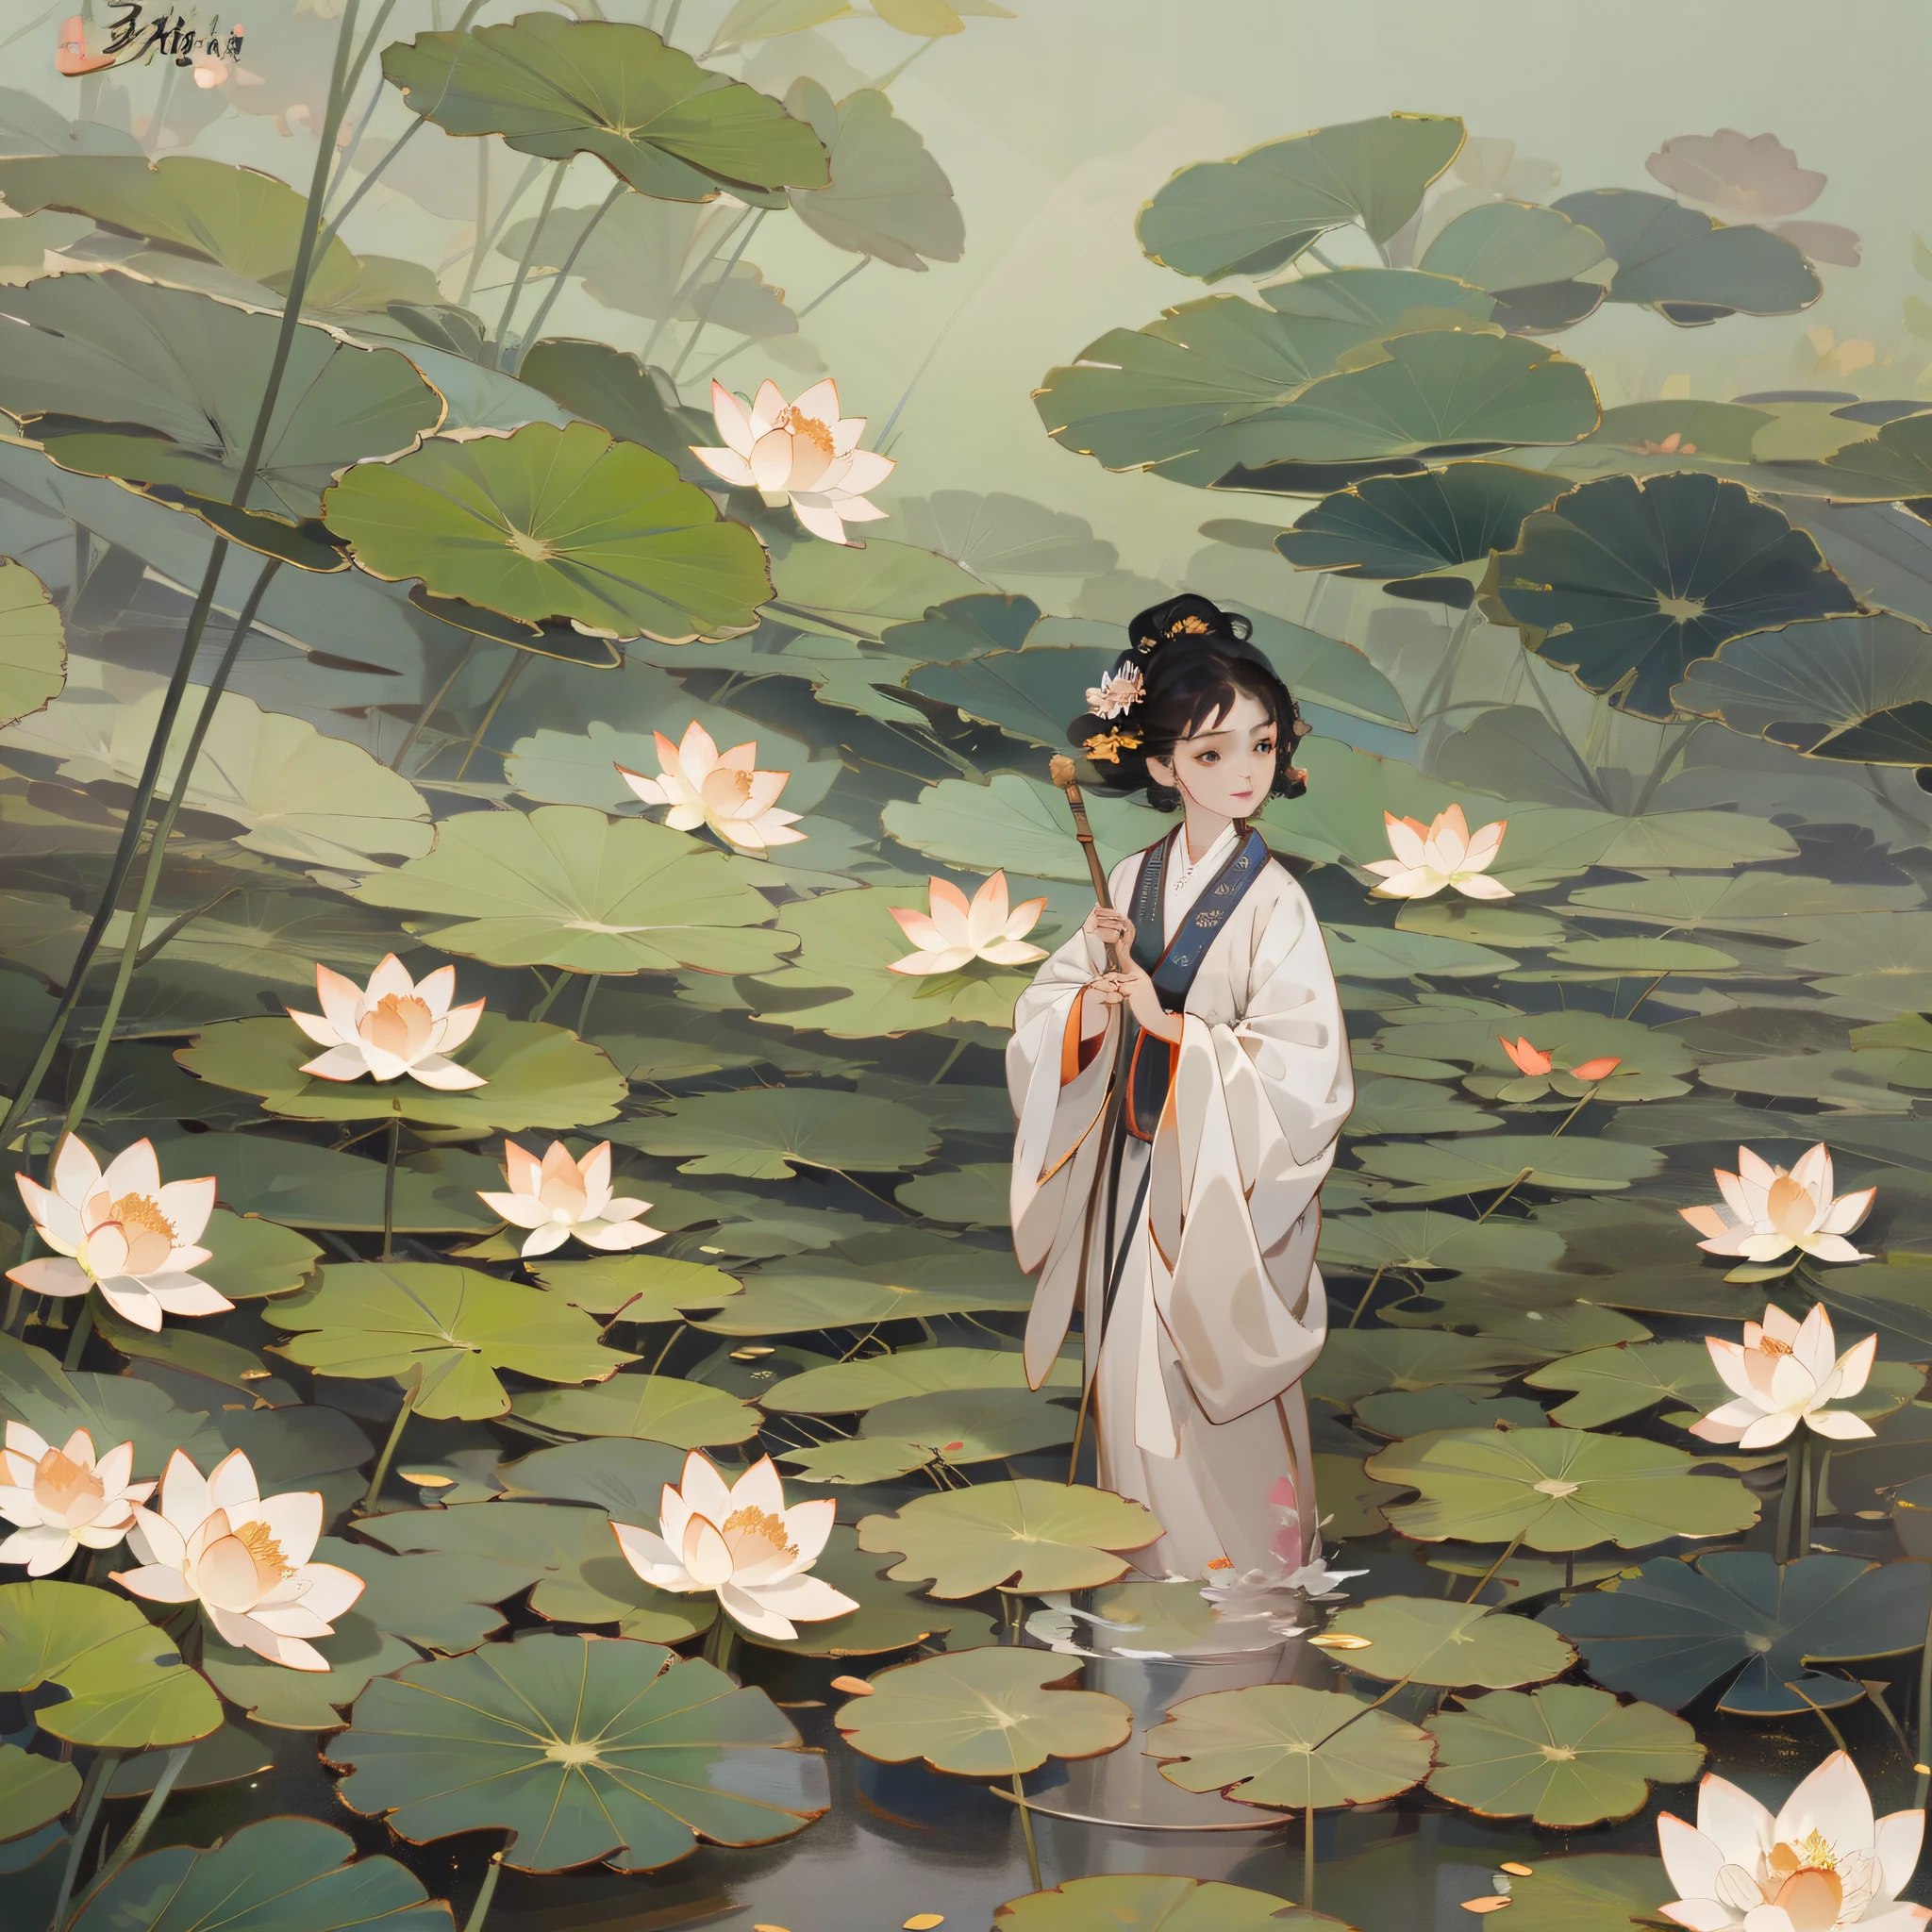 Ilustración del término solar de Lixia, Términos solares chinos, Fondo degradado,  en flor de loto en estanque de lotos, flor de loto y hoja de loto --auto --s2